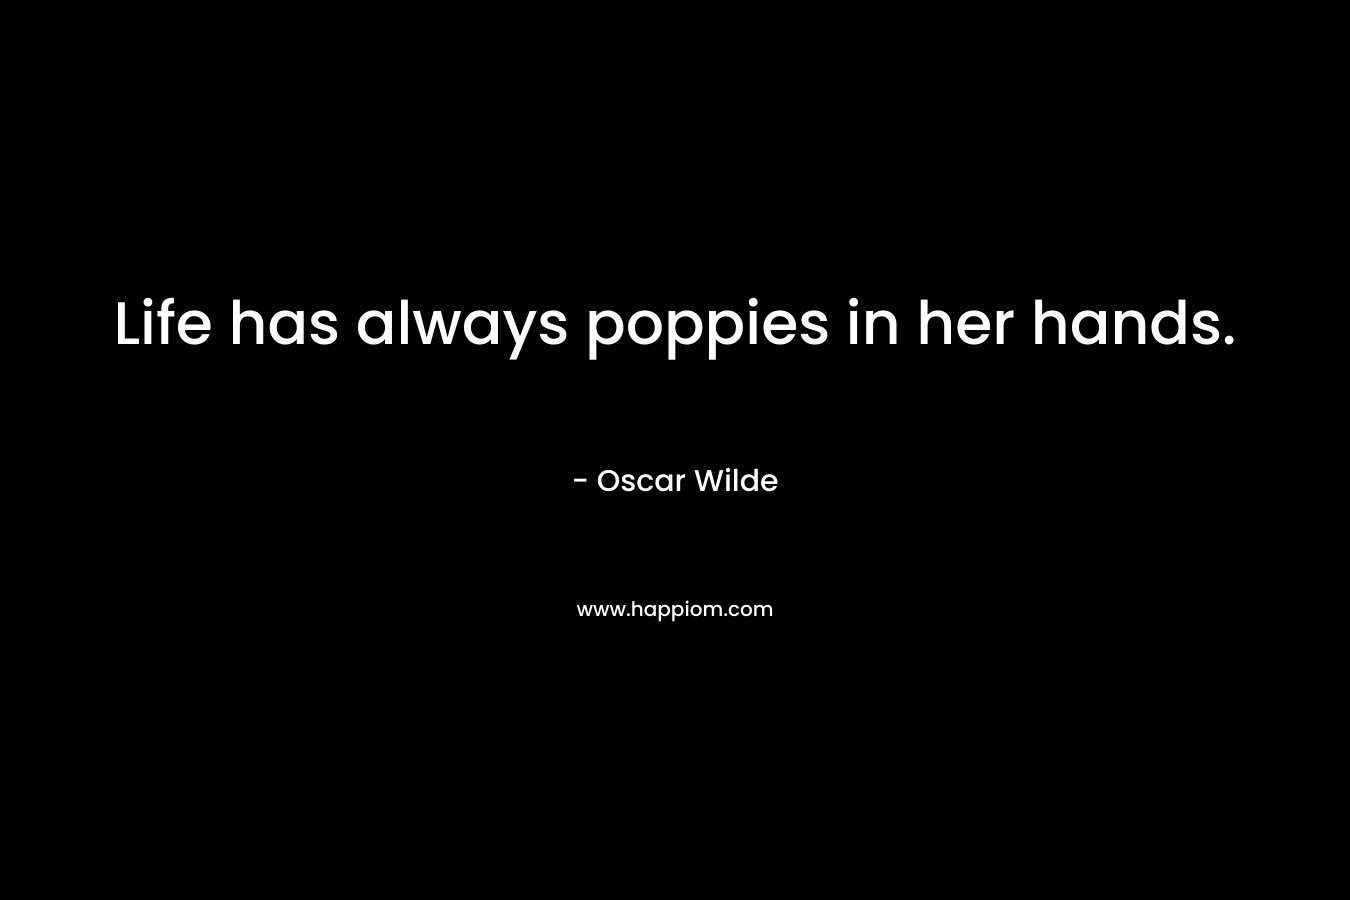 Life has always poppies in her hands.